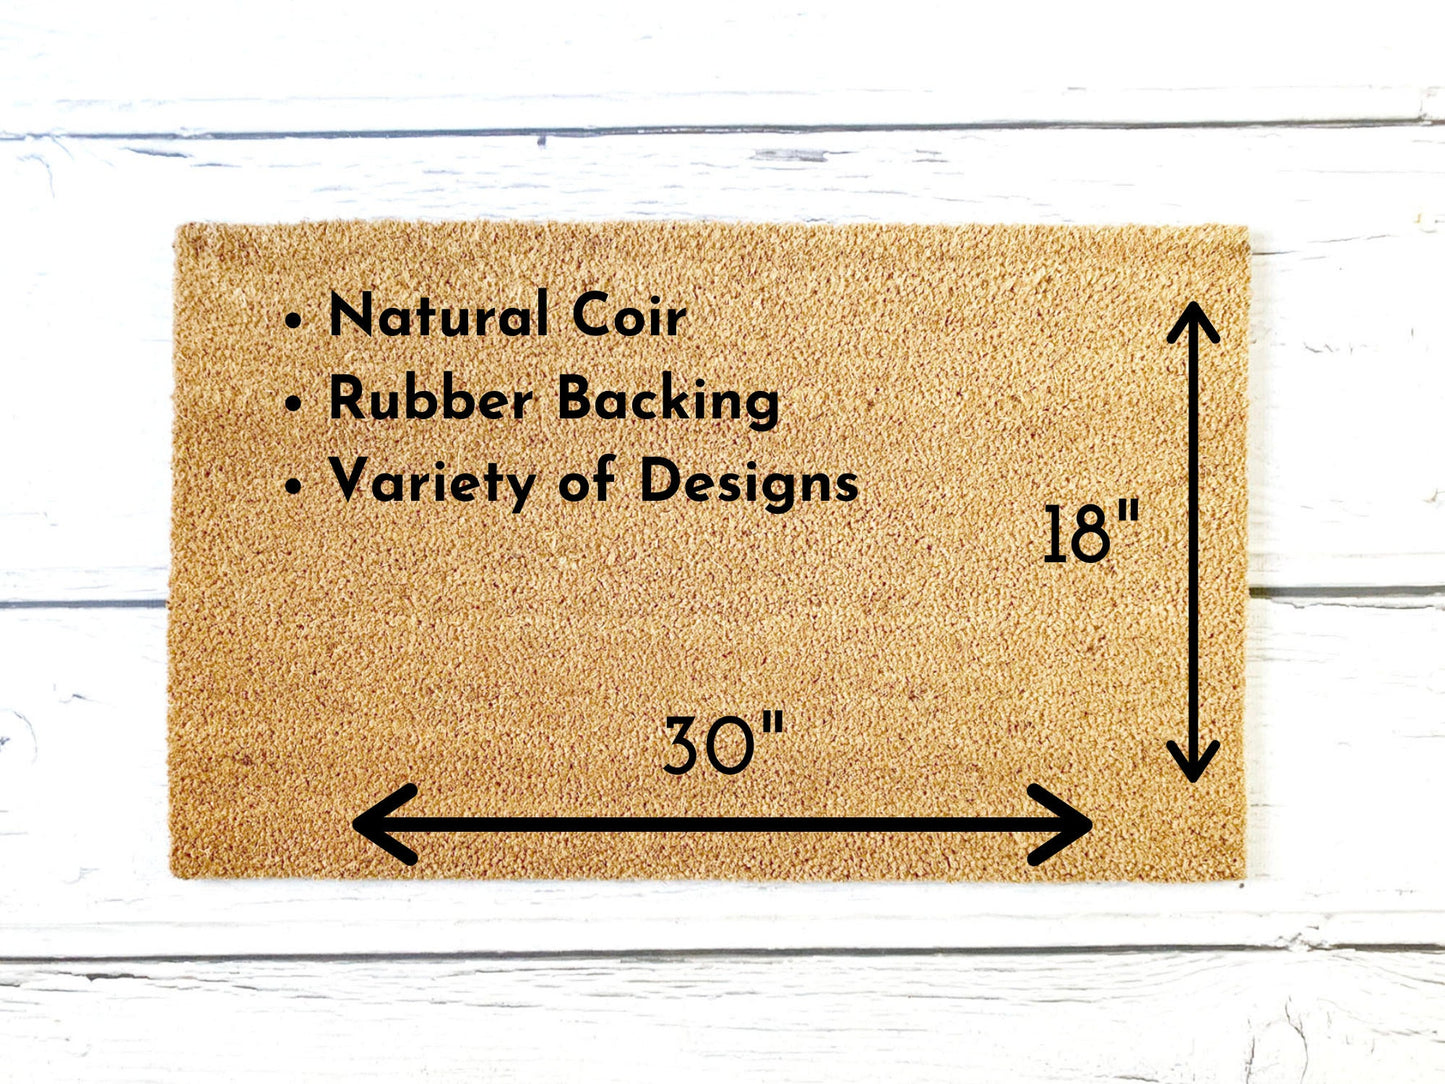 Hello Darling Doormat | Custom Doormat | Spring Doormat | Closing Gift | Welcome Doormat | Front Door Mat | Home Decor | Wedding Gift